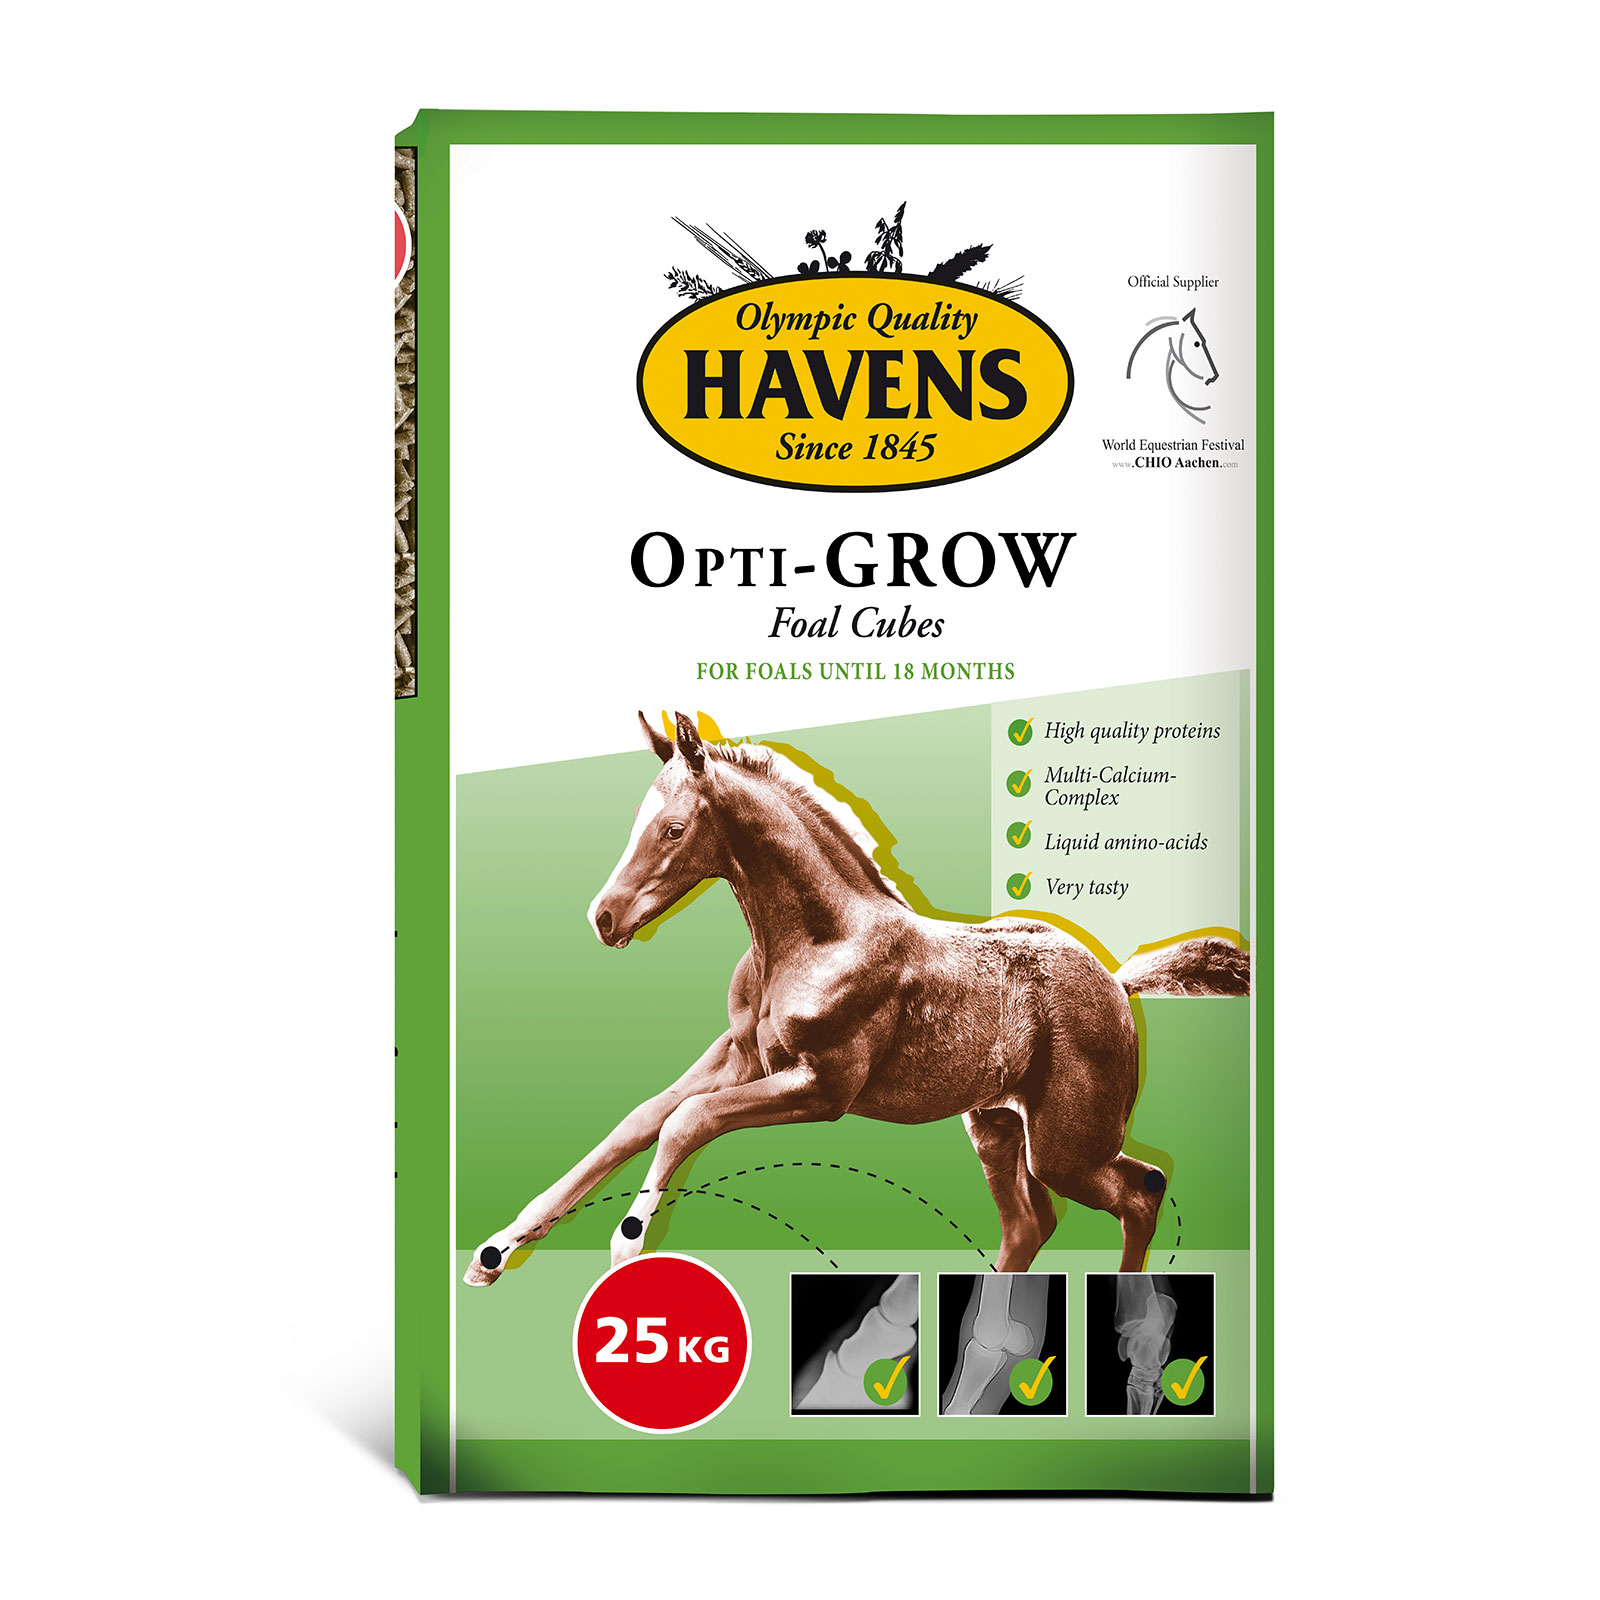 Foal-cubes Opti Grow 25kg - 